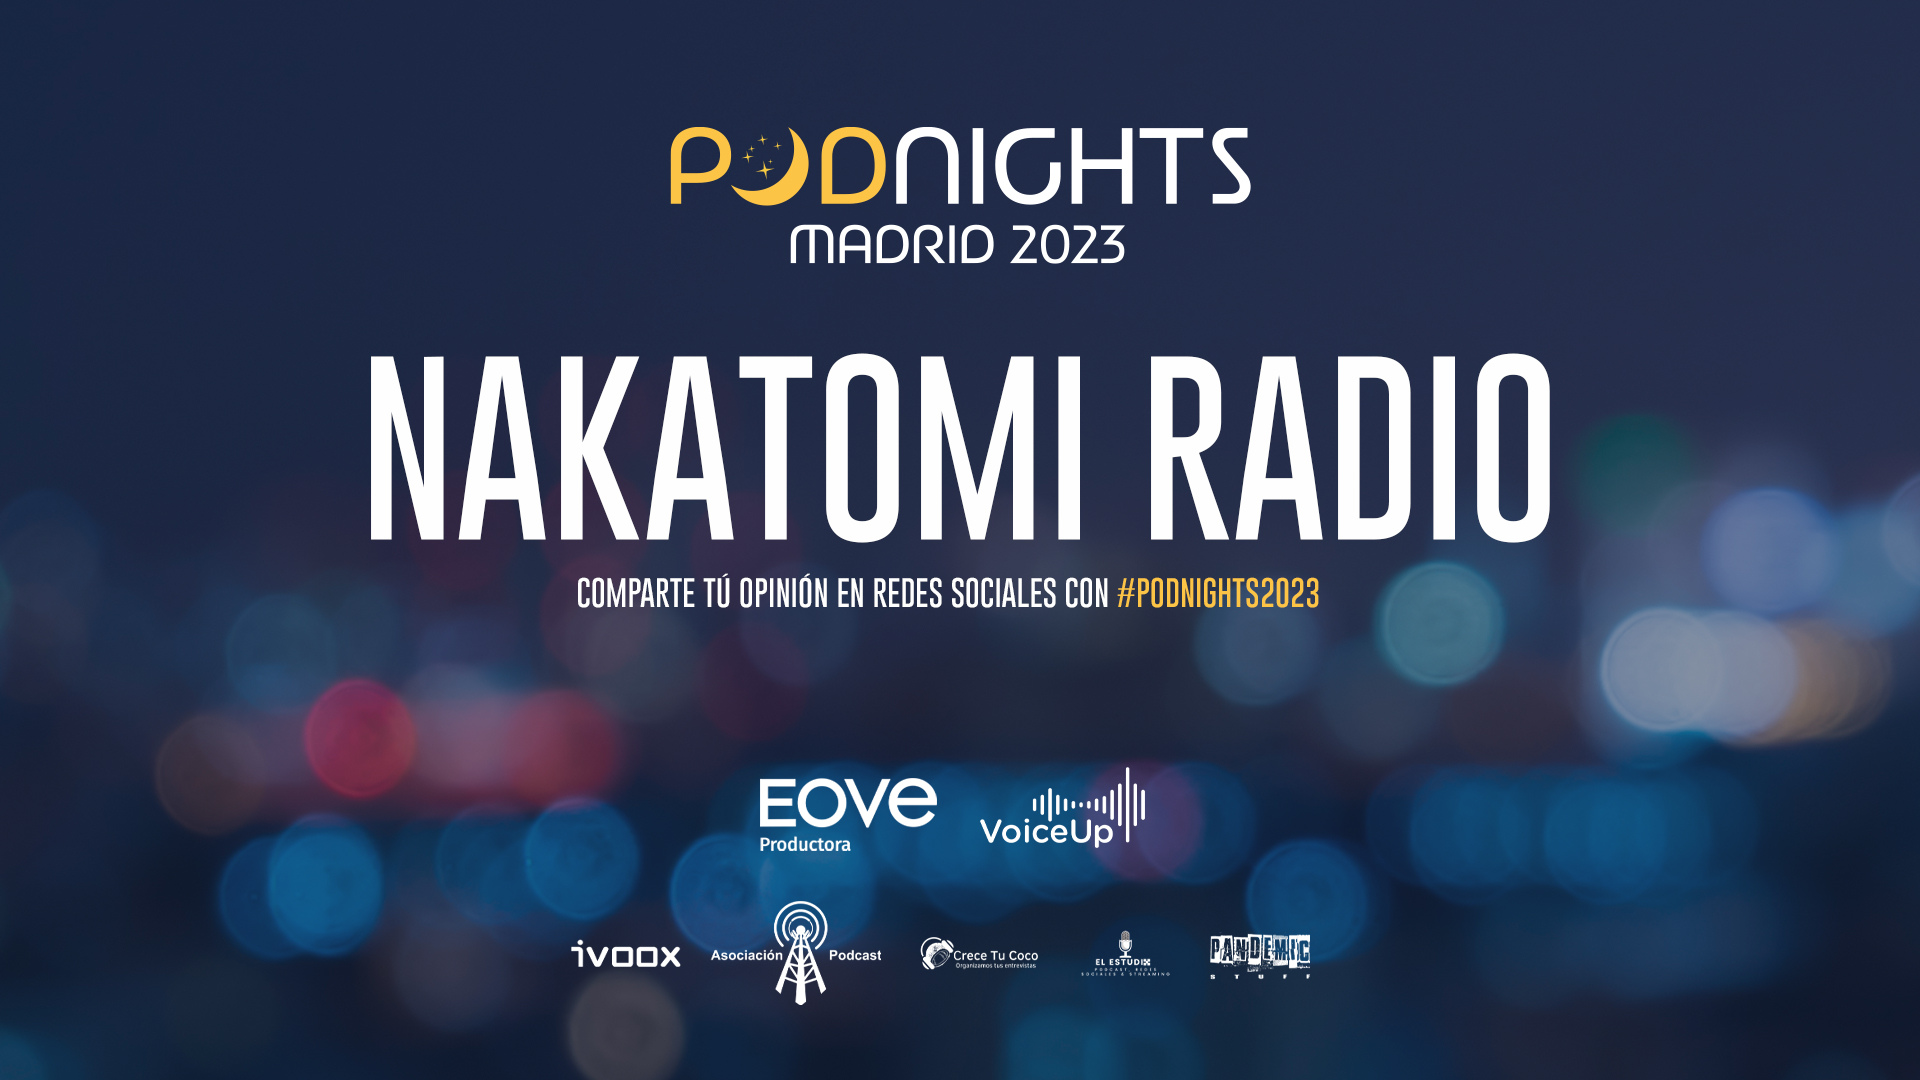 Podnights Madrid: Nakatomi Radio